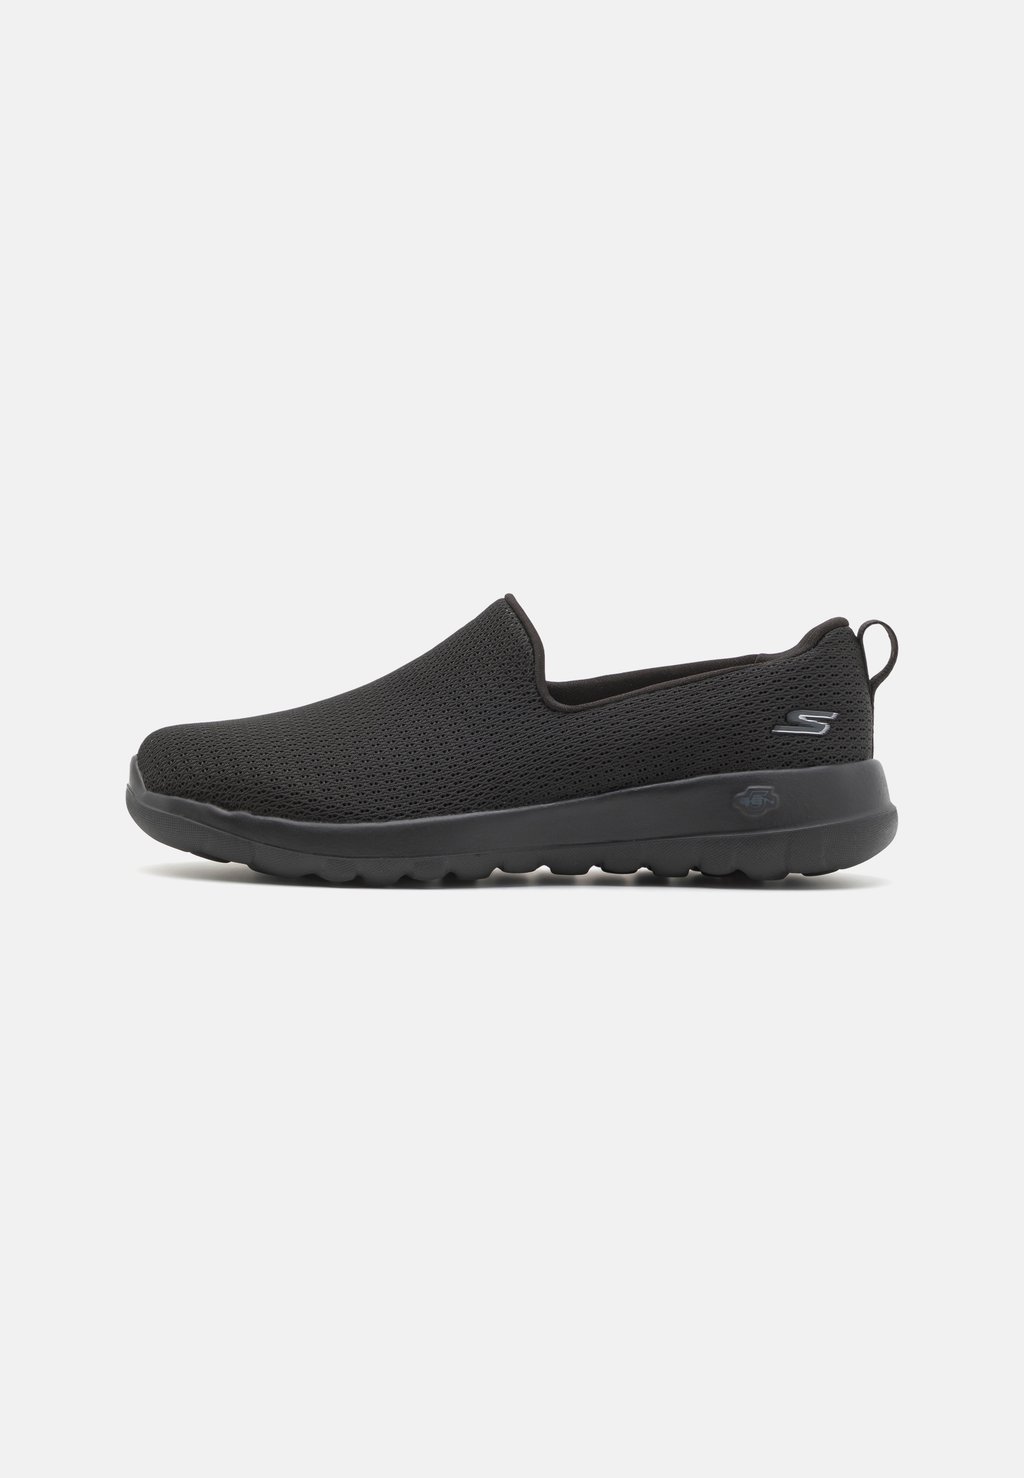 Обувь для ходьбы GO WALK SLIP ON Skechers Performance, цвет black обувь для ходьбы go walk bungee skechers performance цвет black